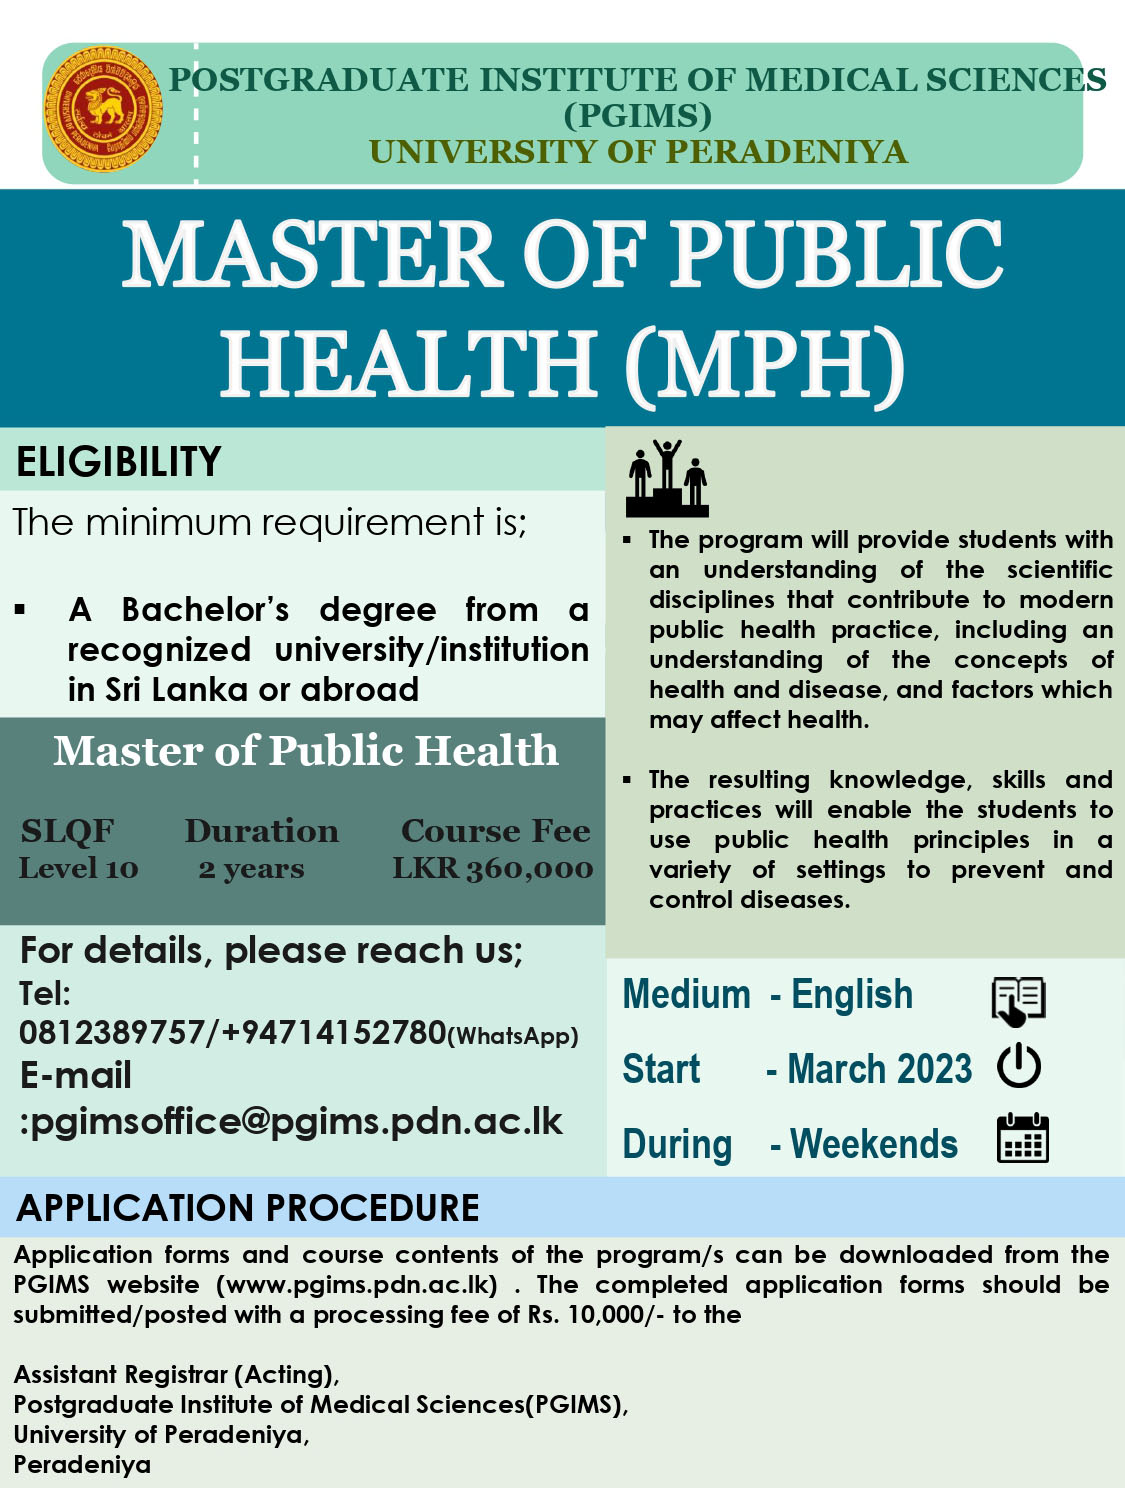 Master of Public Health (MPH) 2023 - PGIMS, University of Peradeniya